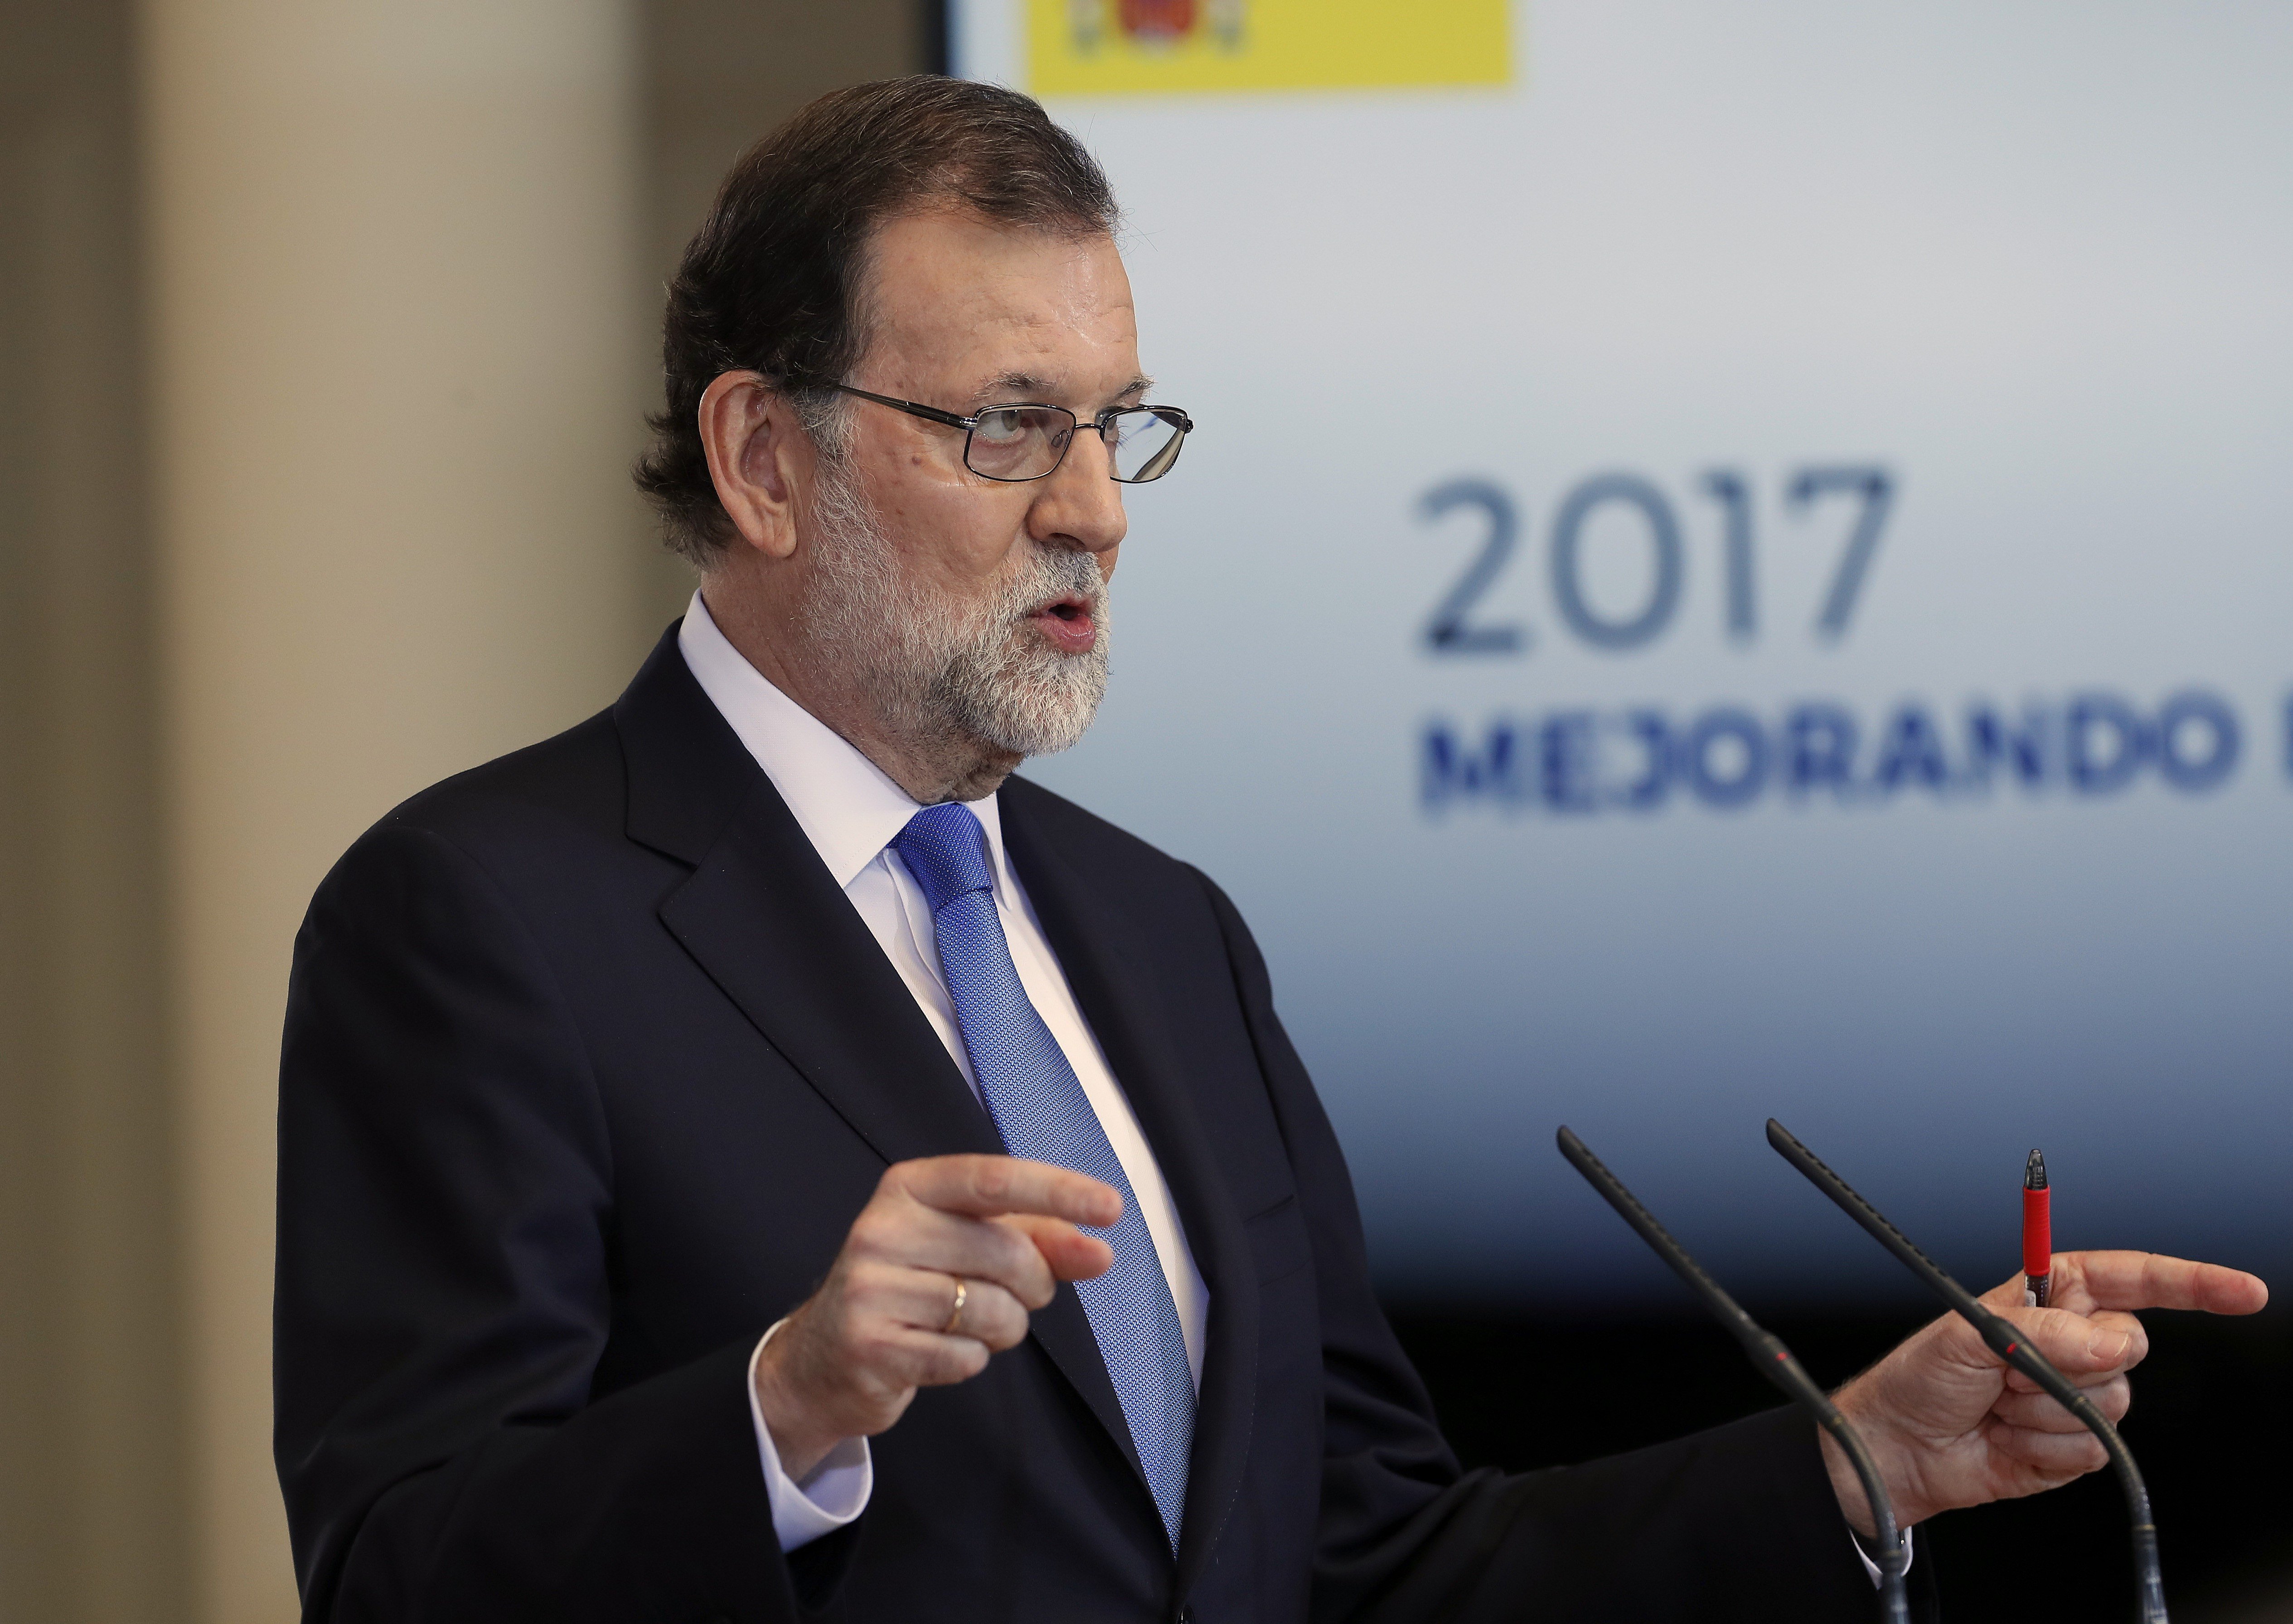 VÍDEO: Cuando Rajoy sí conocía cuanto costaba una campaña del PP